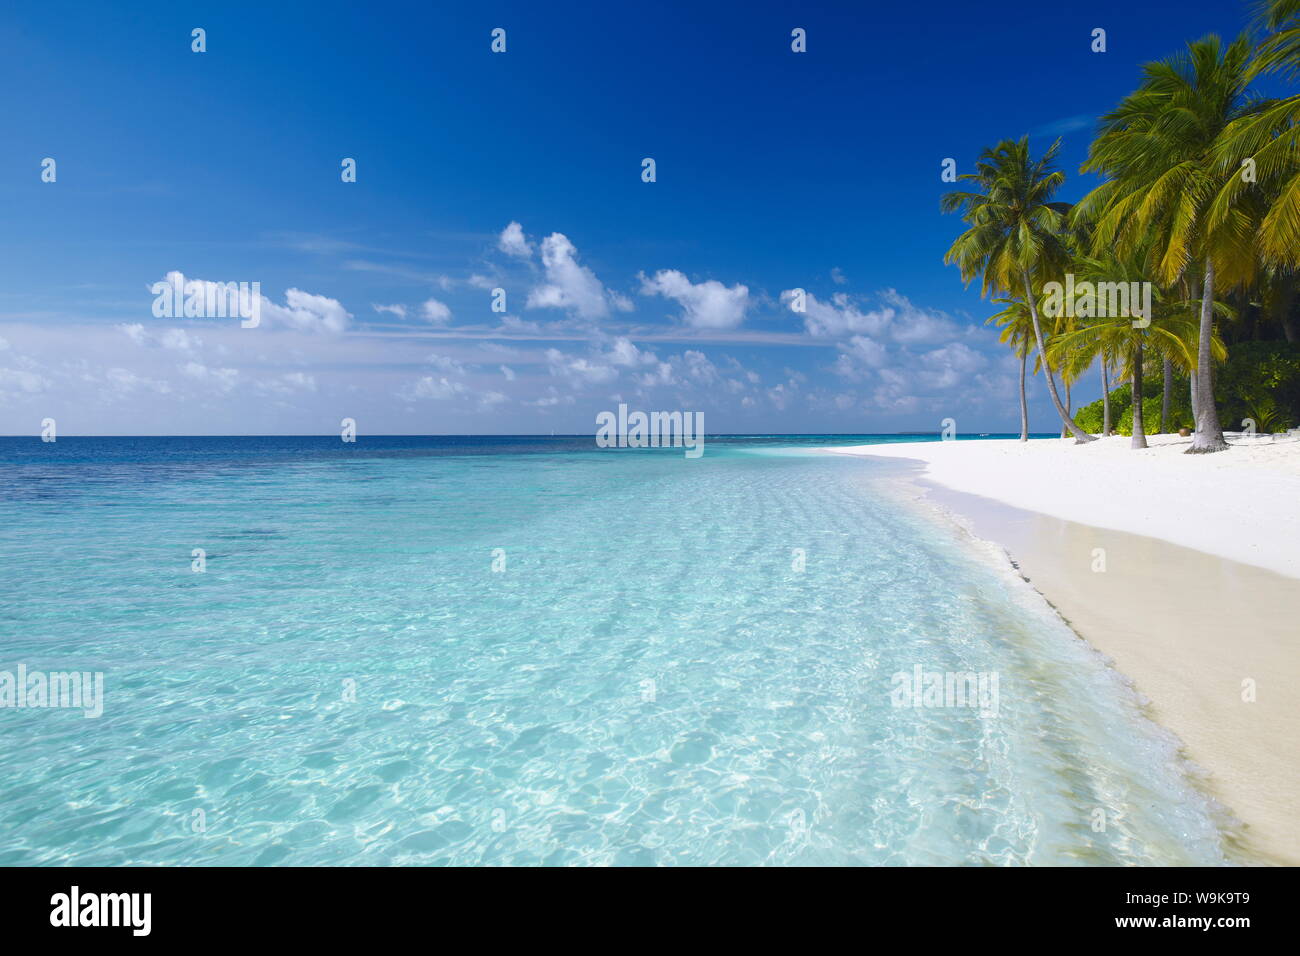 Tropical Island et plage, Maldives, océan Indien, Asie Banque D'Images